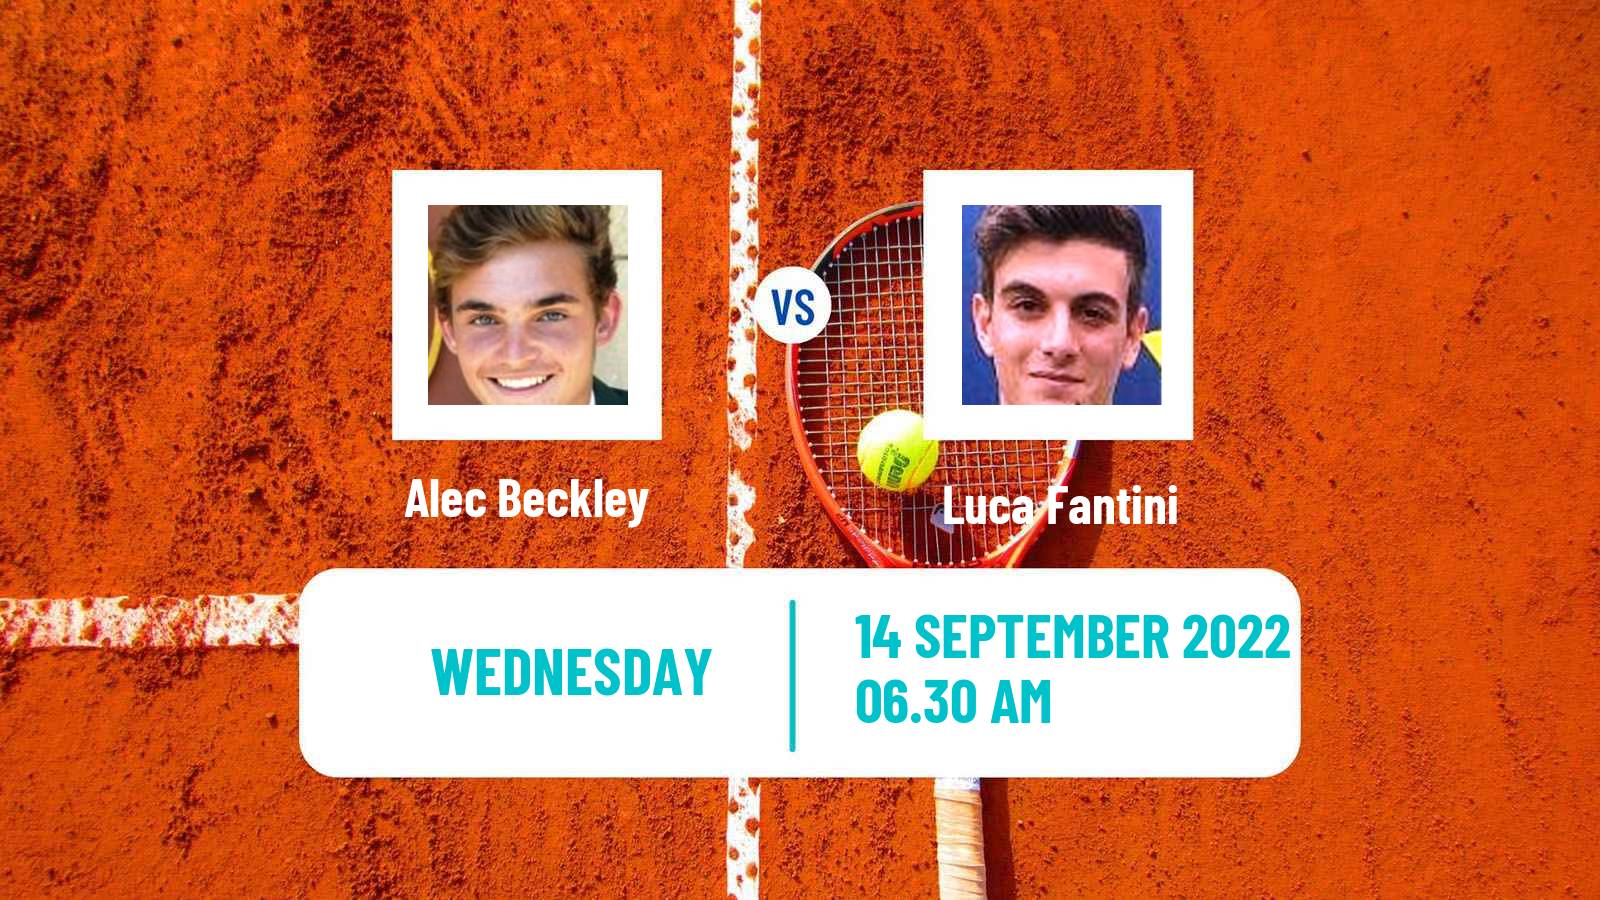 Tennis ITF Tournaments Alec Beckley - Luca Fantini